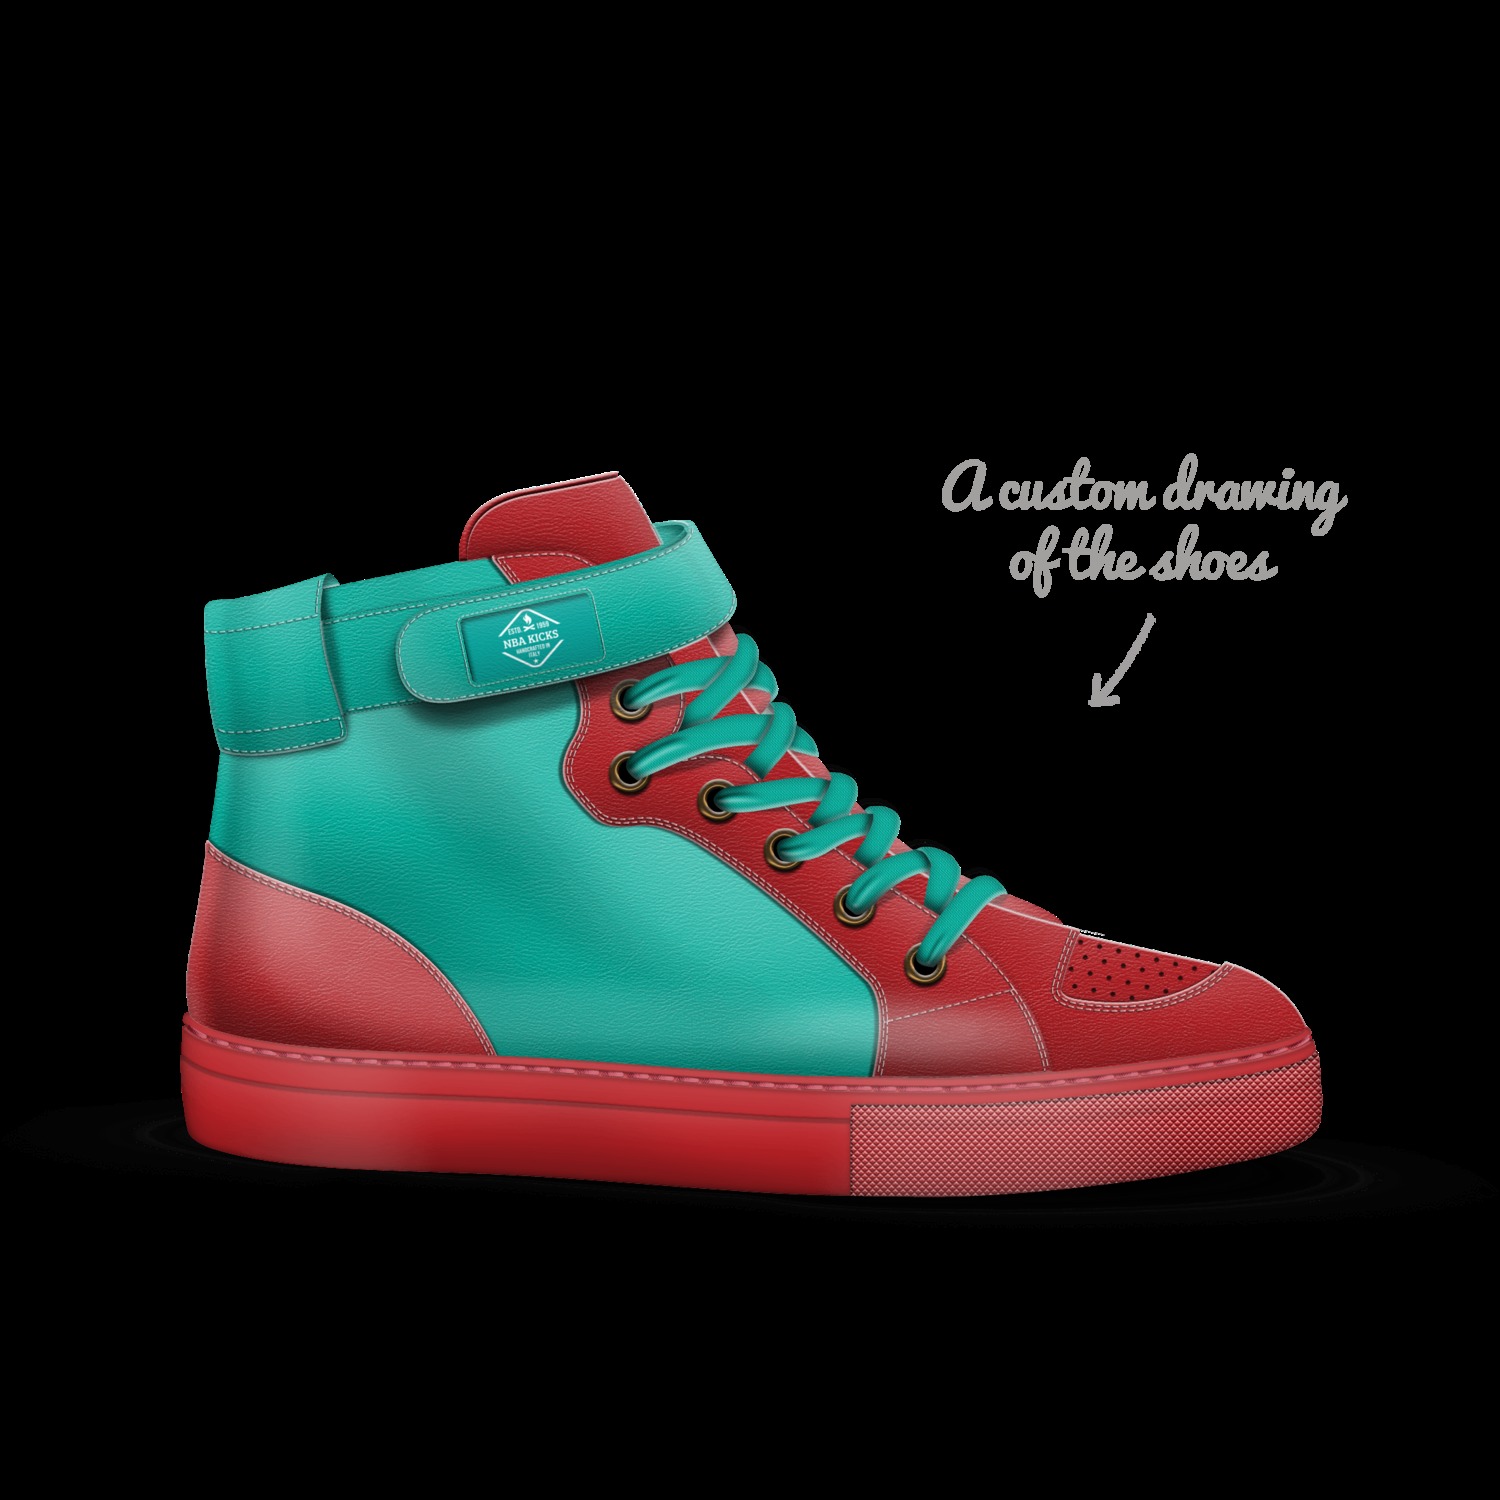 NBA KICKS | A Custom Shoe concept by Hdhthc